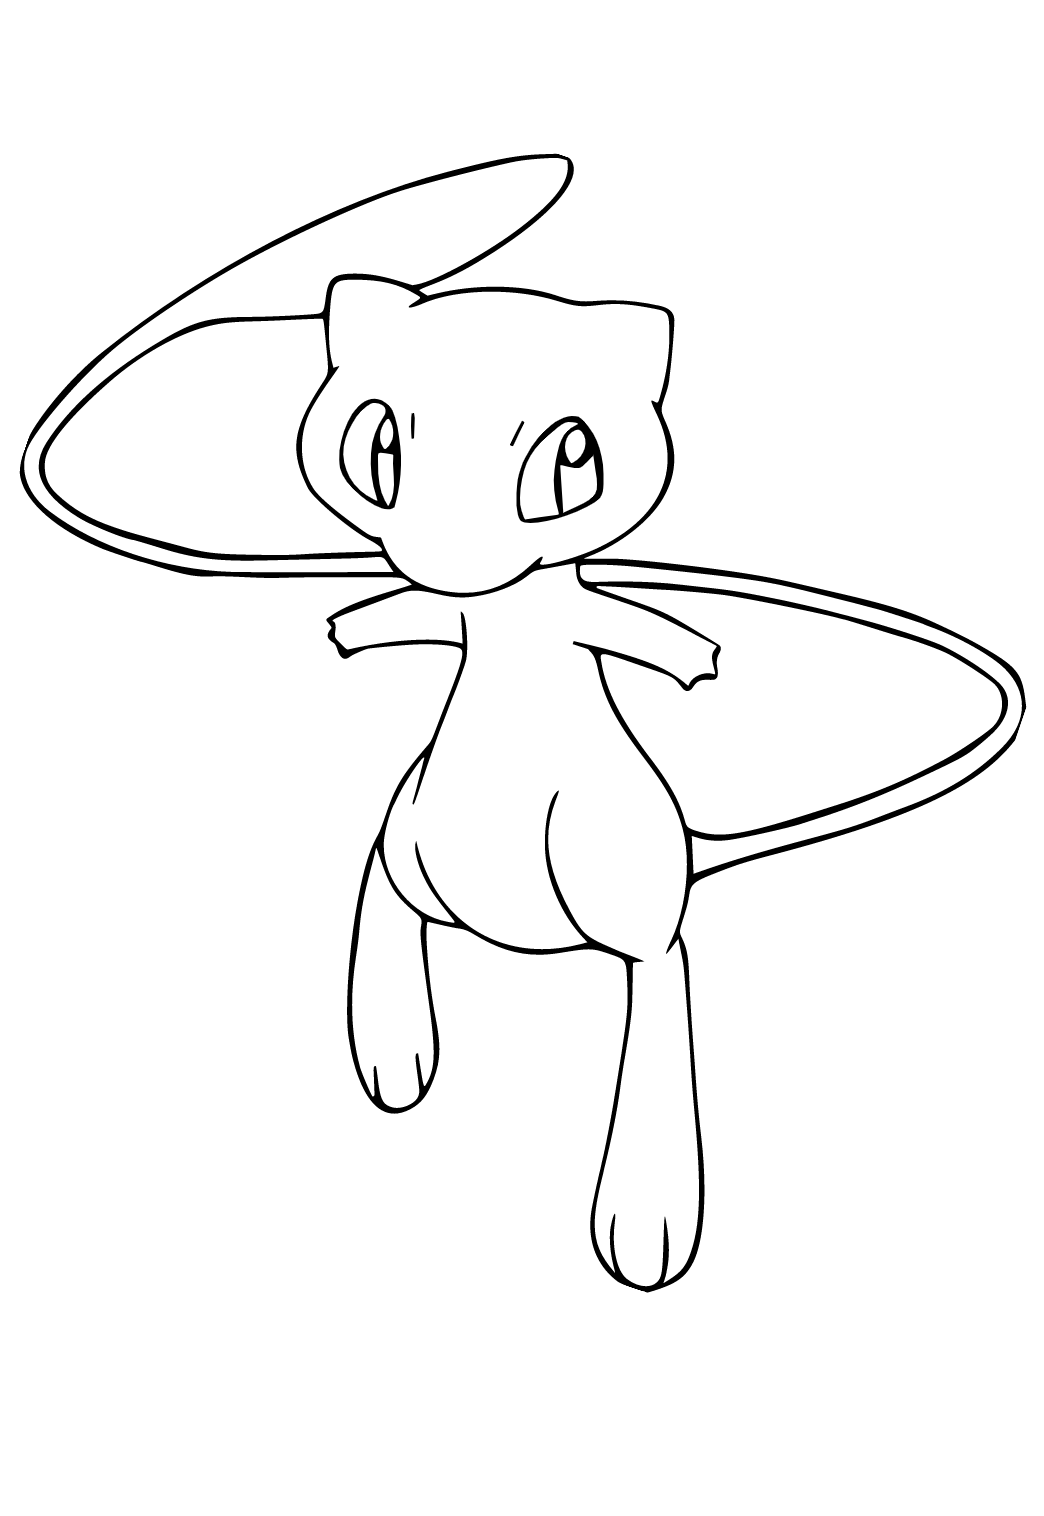 Aventuras com Pokémon Mew: Desenhos para Imprimir e Colorir